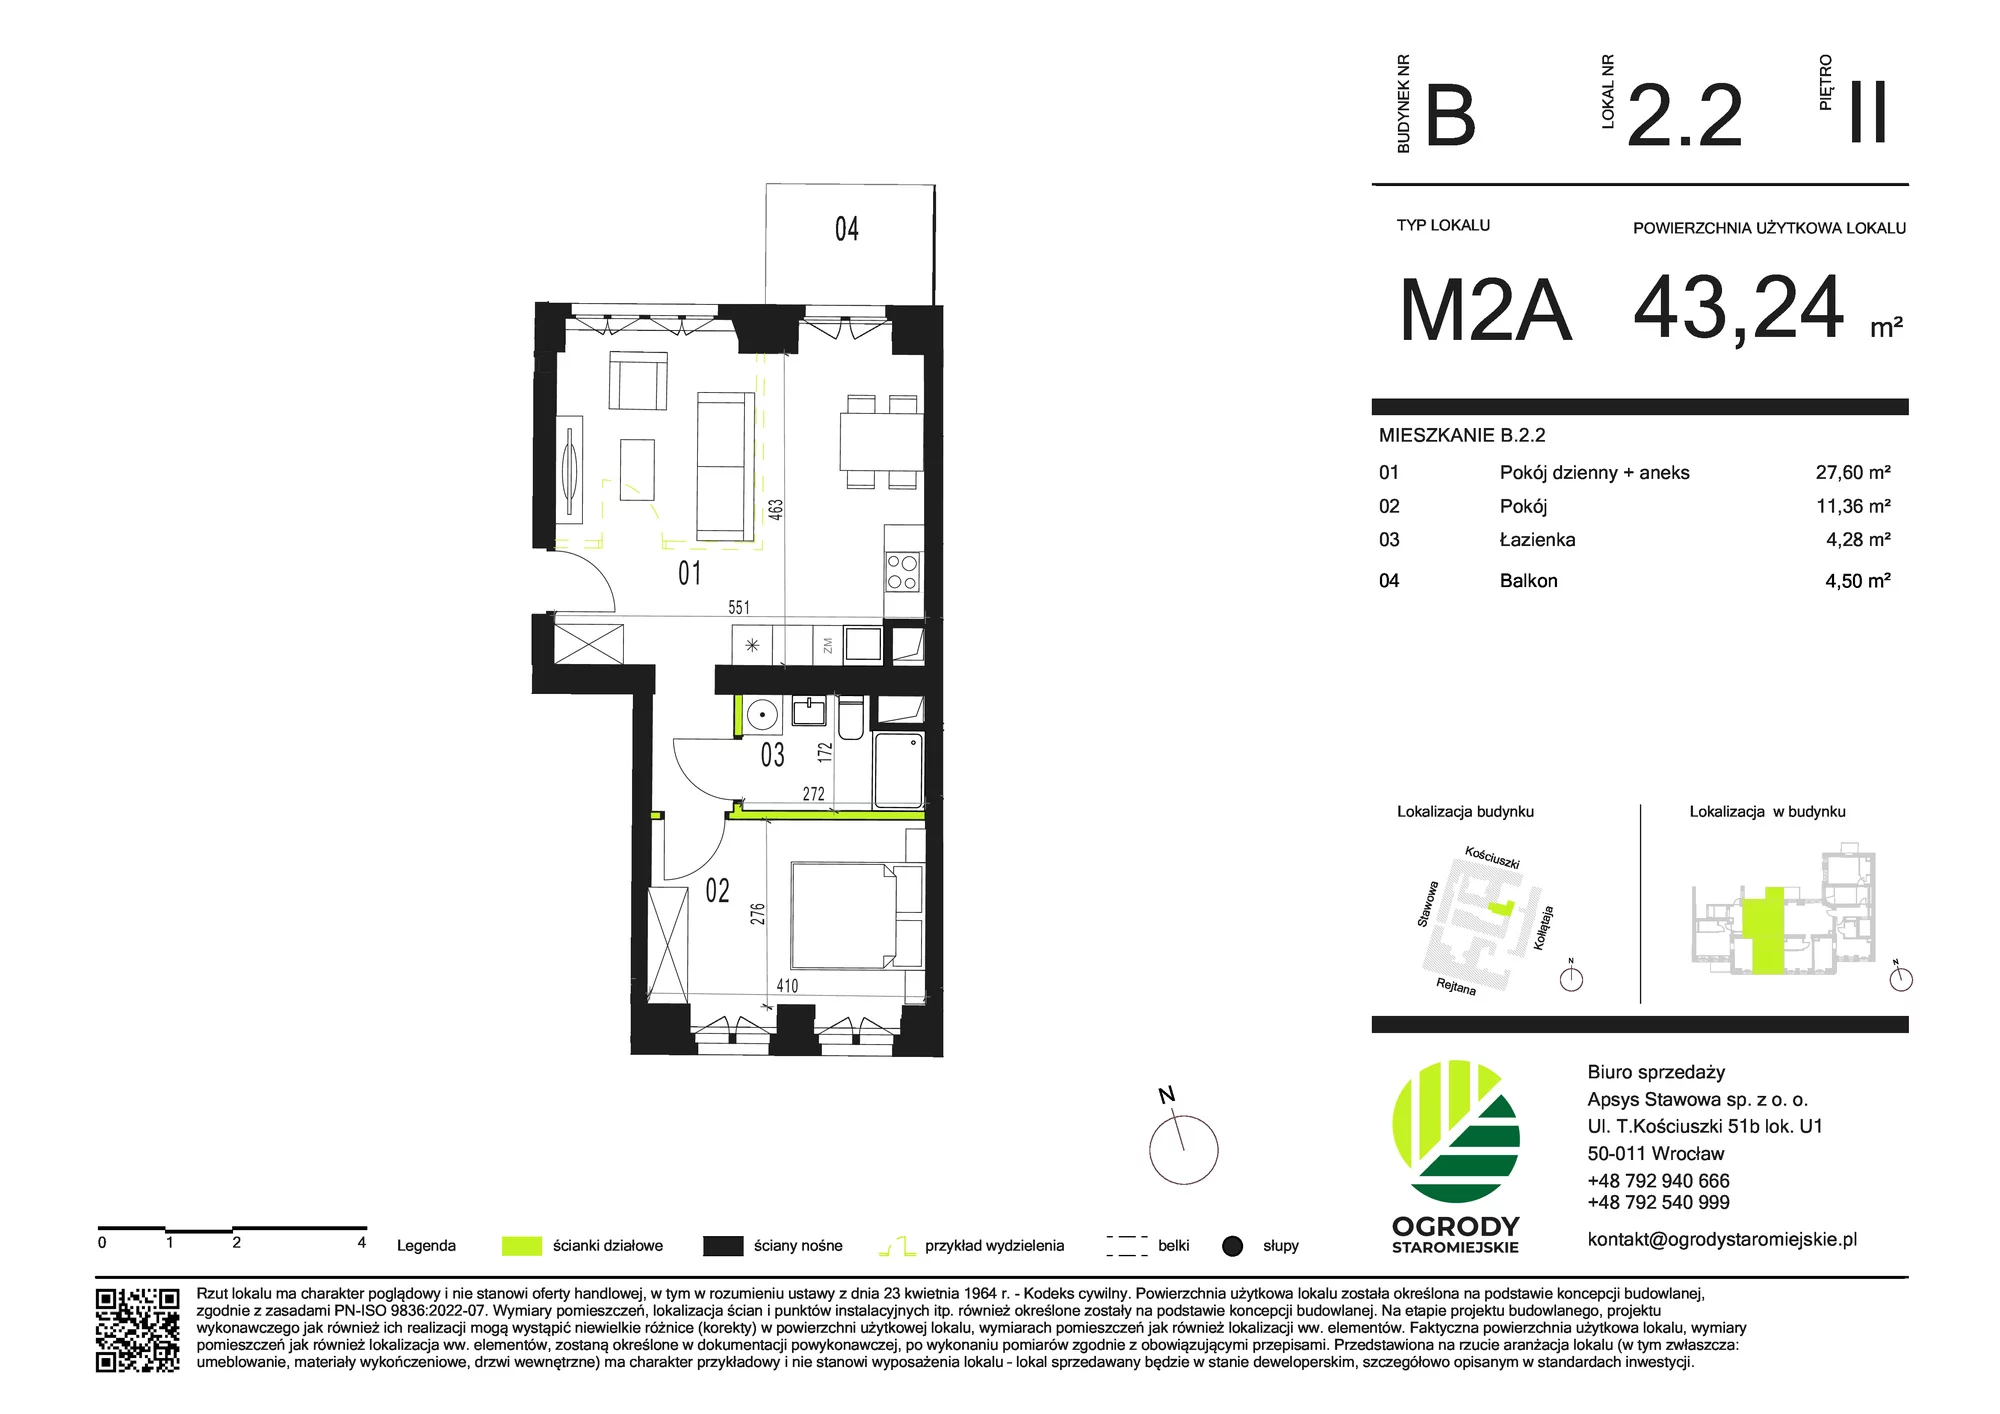 Mieszkanie 43,24 m², piętro 2, oferta nr B.2.2, Ogrody Staromiejskie, Wrocław, Przedmieście Świdnickie, ul. Stawowa 10